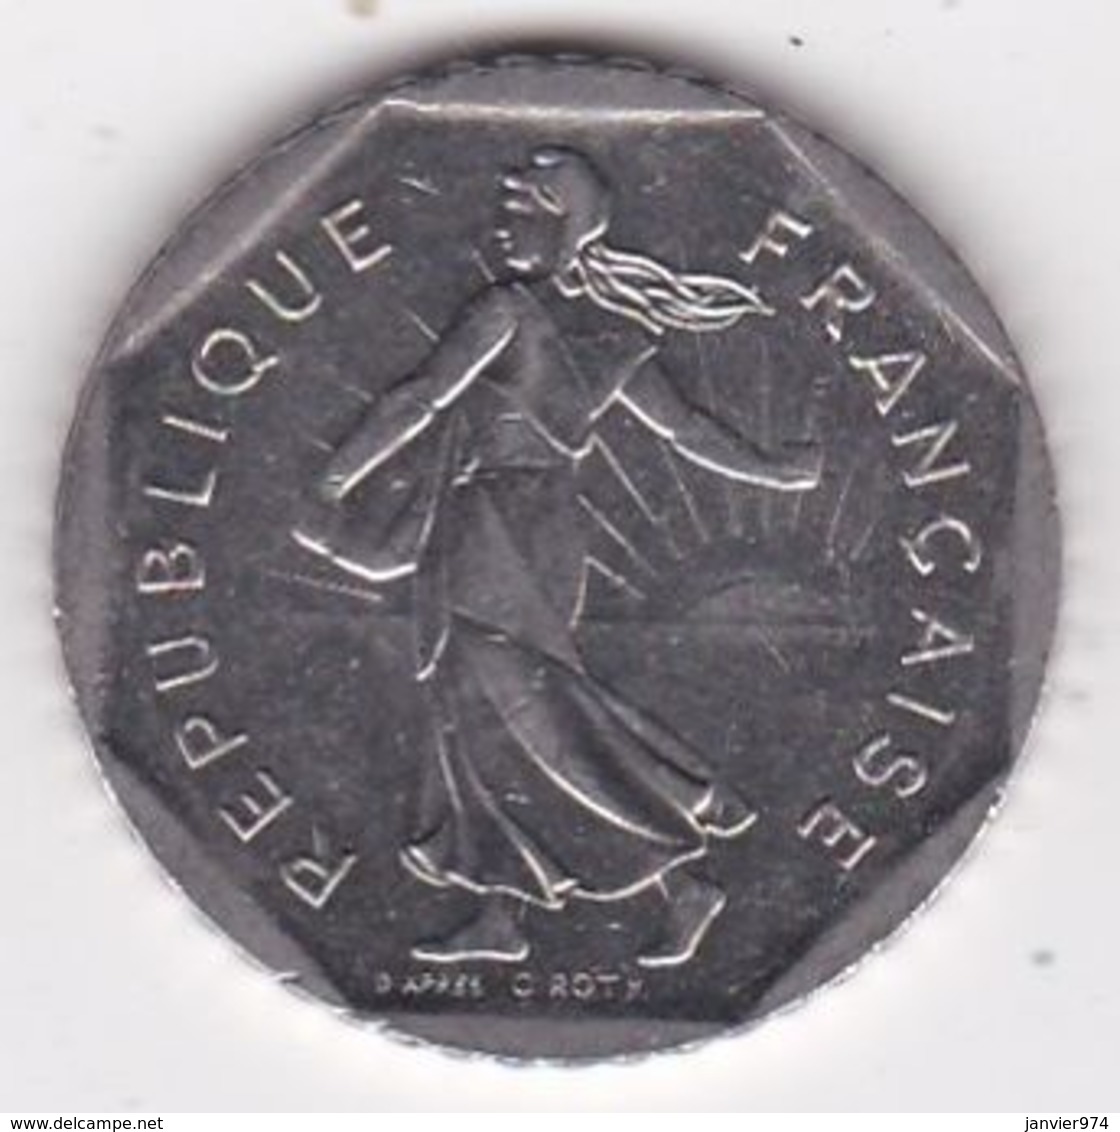 2 Francs Semeuse 1994 En Nickel - 2 Francs